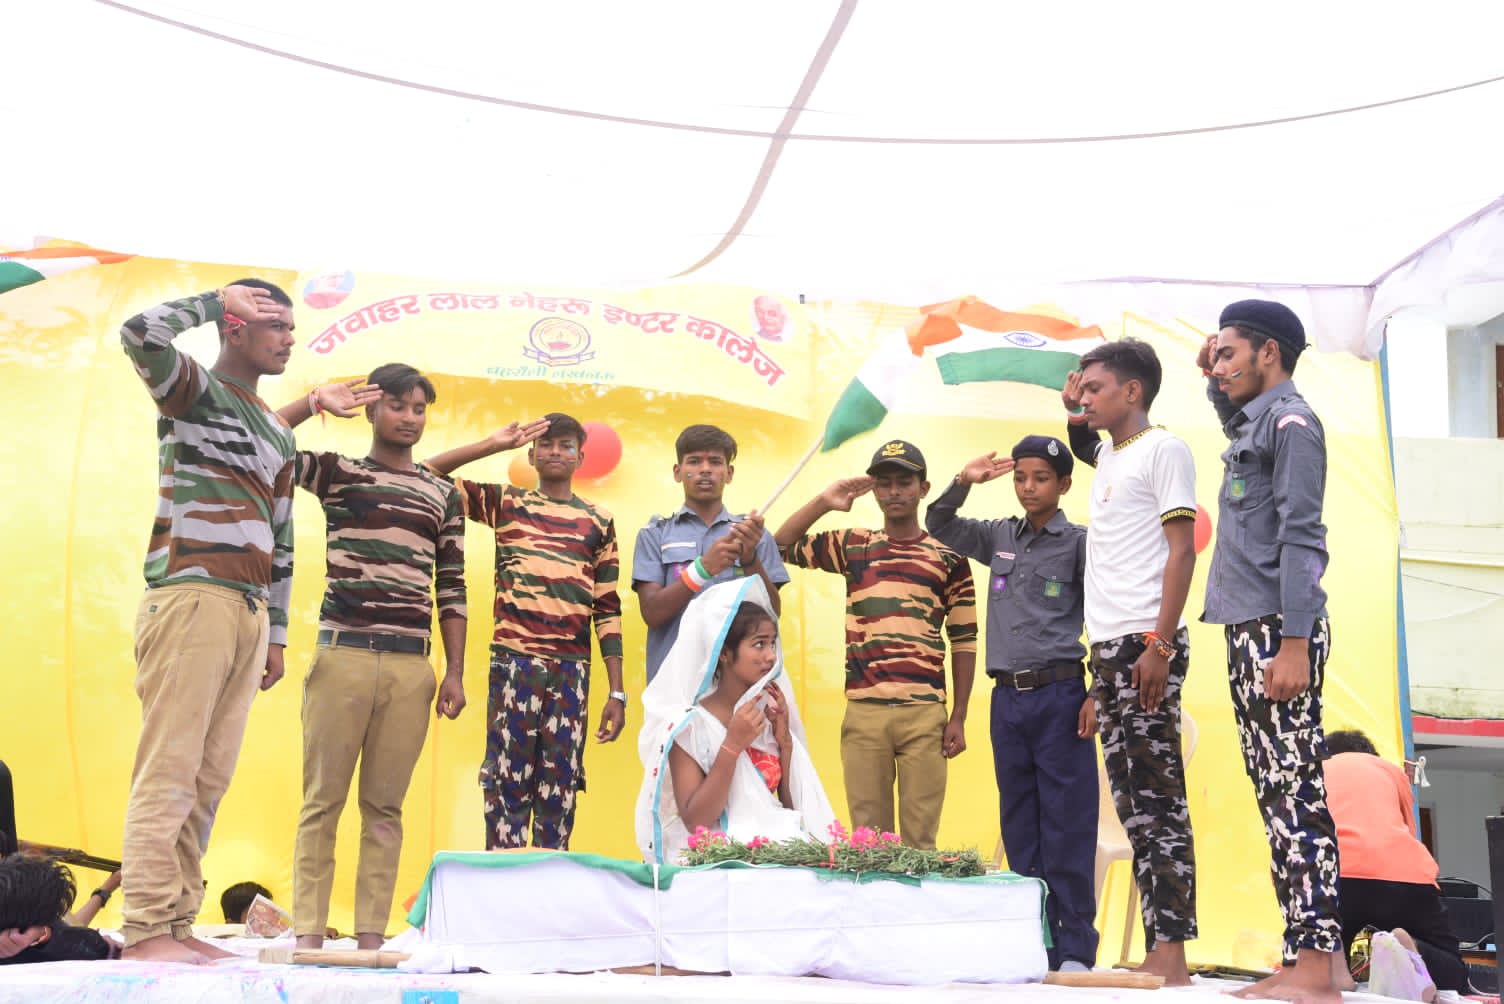 स्वतंत्रता दिवस पर जवाहरलाल नेहरू इंटर कॉलेज के छात्र छात्राओं ने विक्रम बत्रा व उनकी मां का किया अभिनय